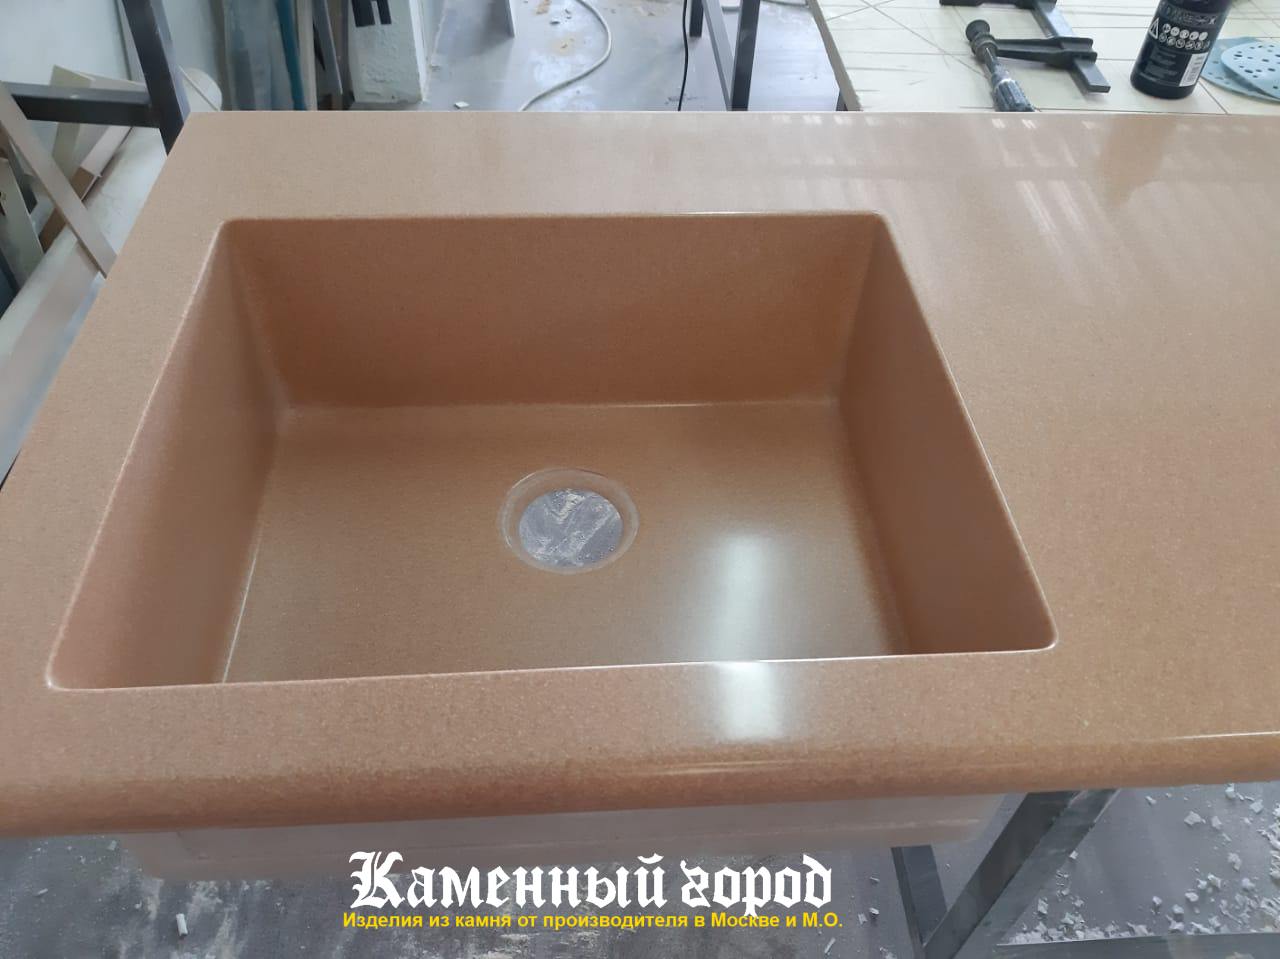 Столешница под заказа на кухне из искусственного камня LG HI-MACS - г.Москва